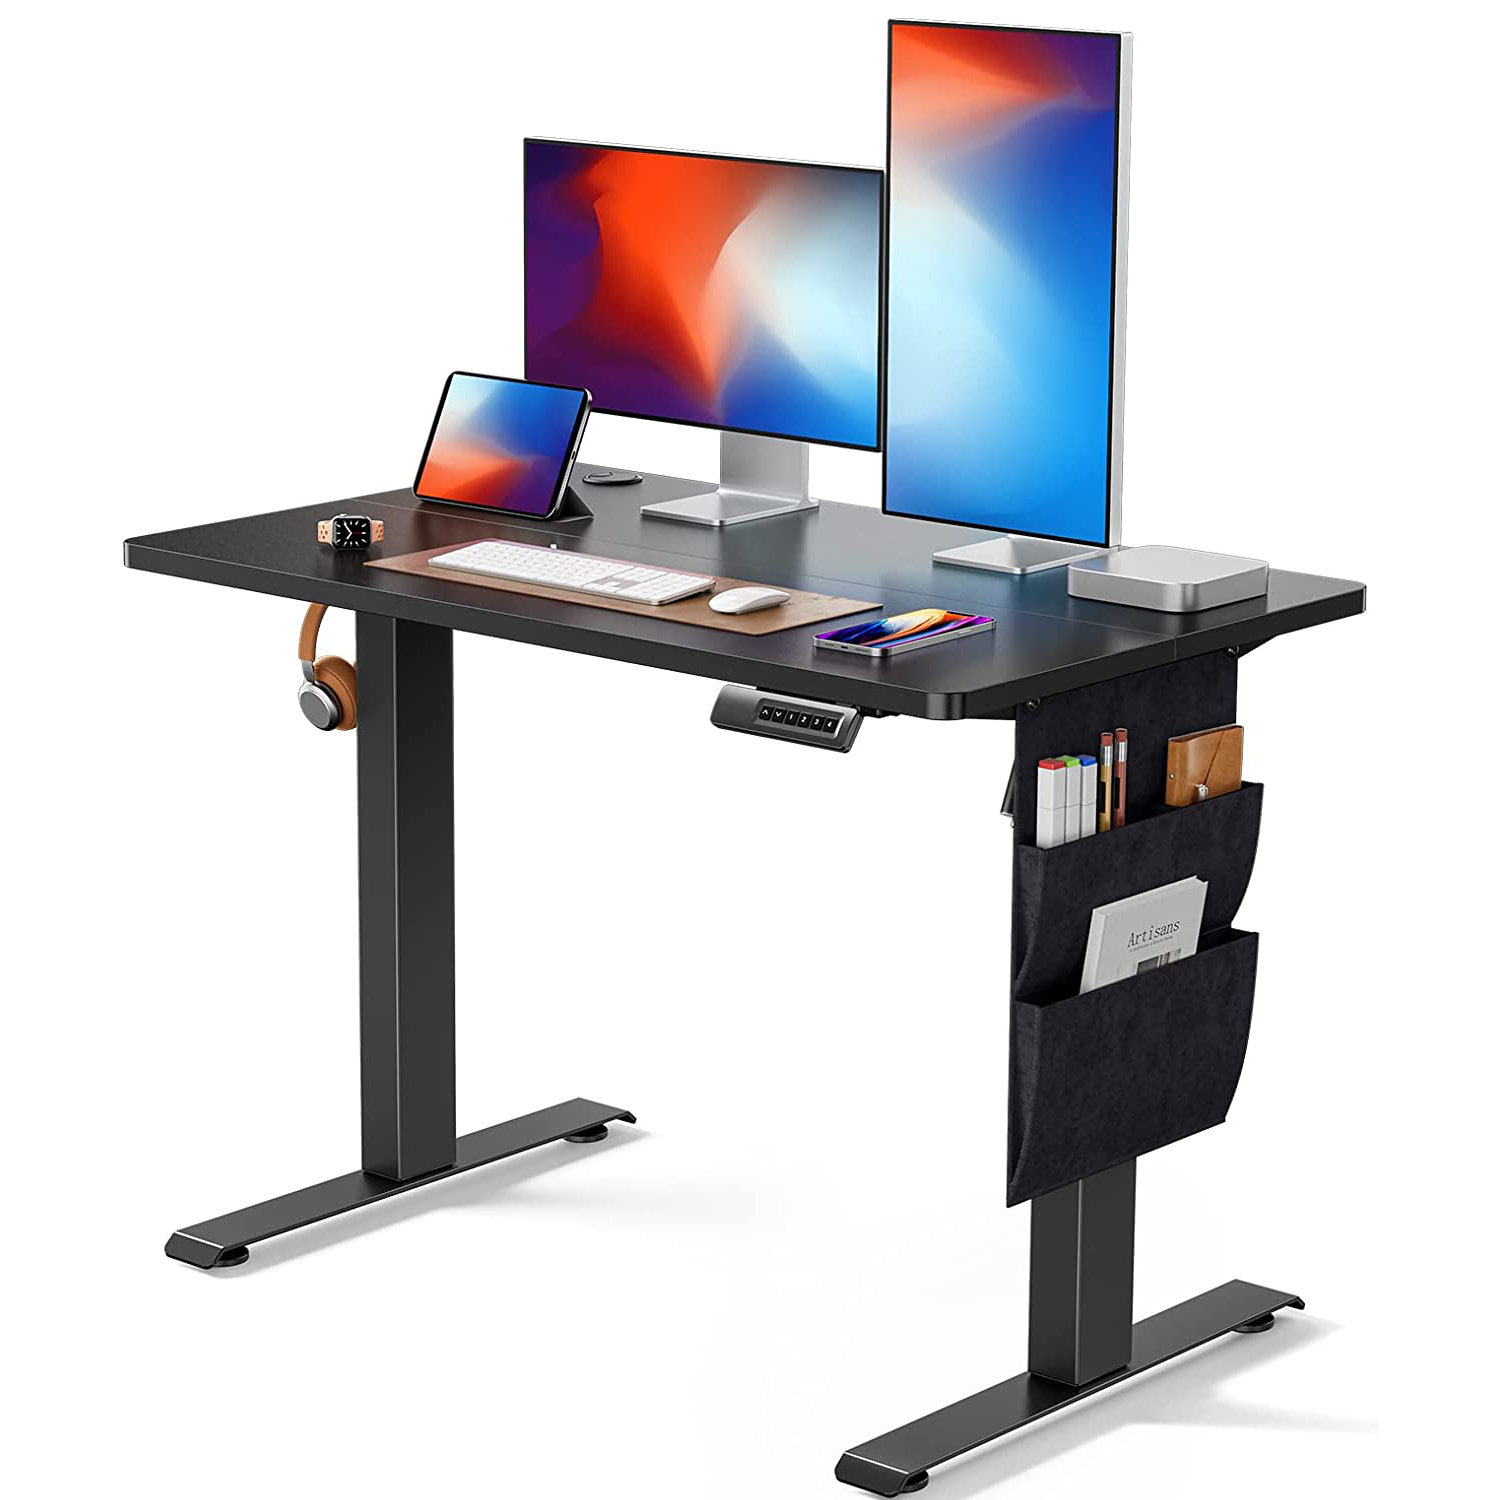 https://assets.wfcdn.com/im/45714541/compr-r85/2435/243591483/hrithvik-standing-desk-adjustable-height-electric-standing-desk-with-storage-bag-stand-up-desk-for-home-off.jpg